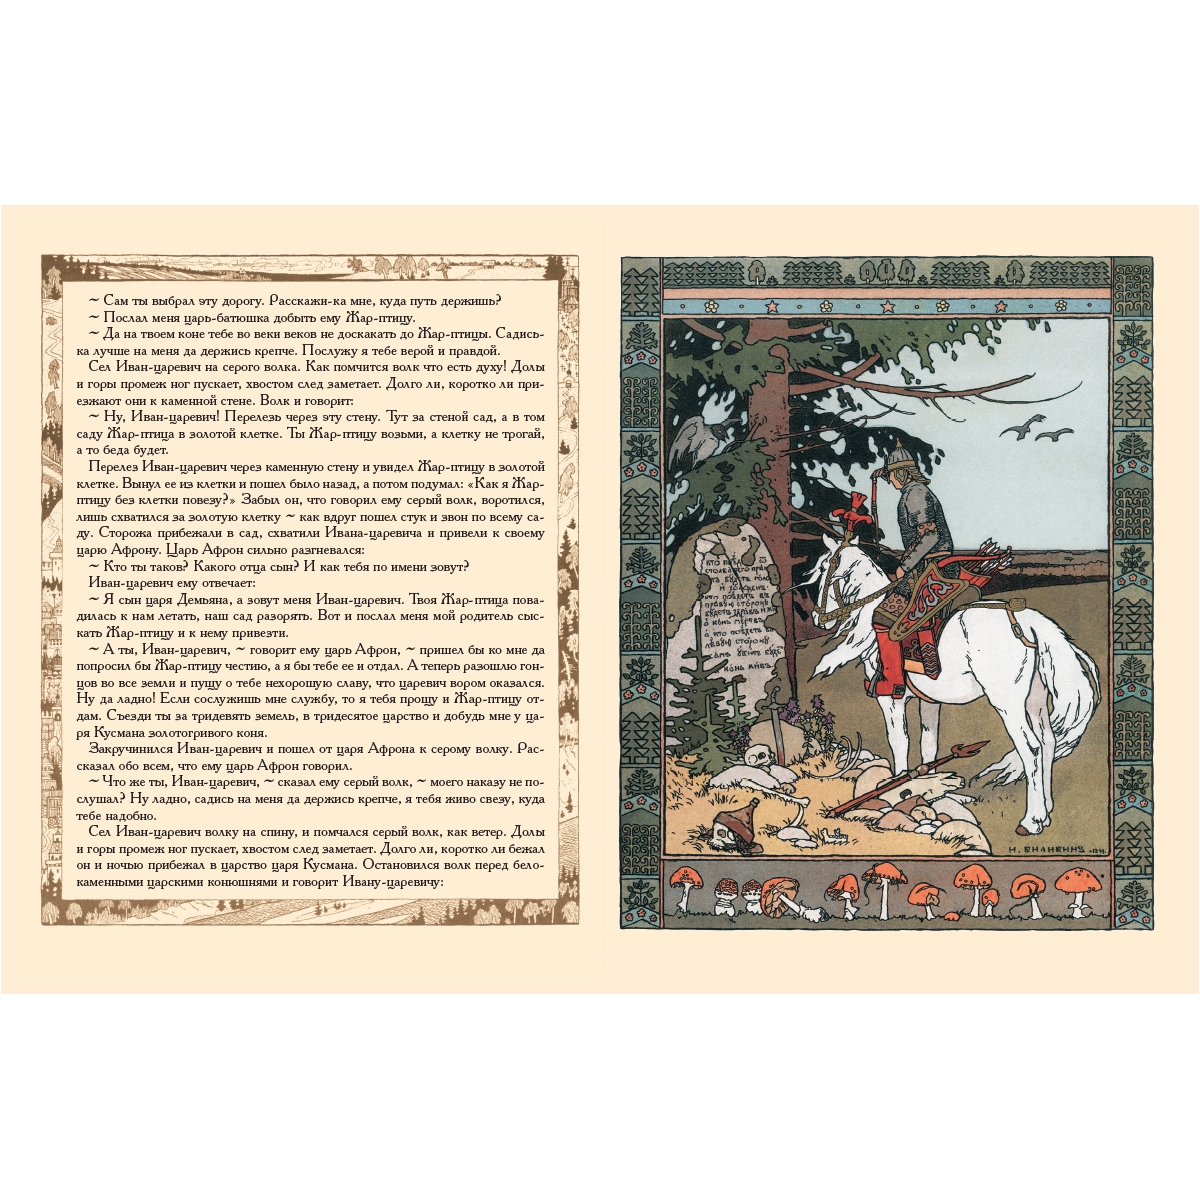 Читать сказку сказка о царевиче, жар-птице и сером волке - русская сказка, онлайн бесплатно с иллюстрациями.